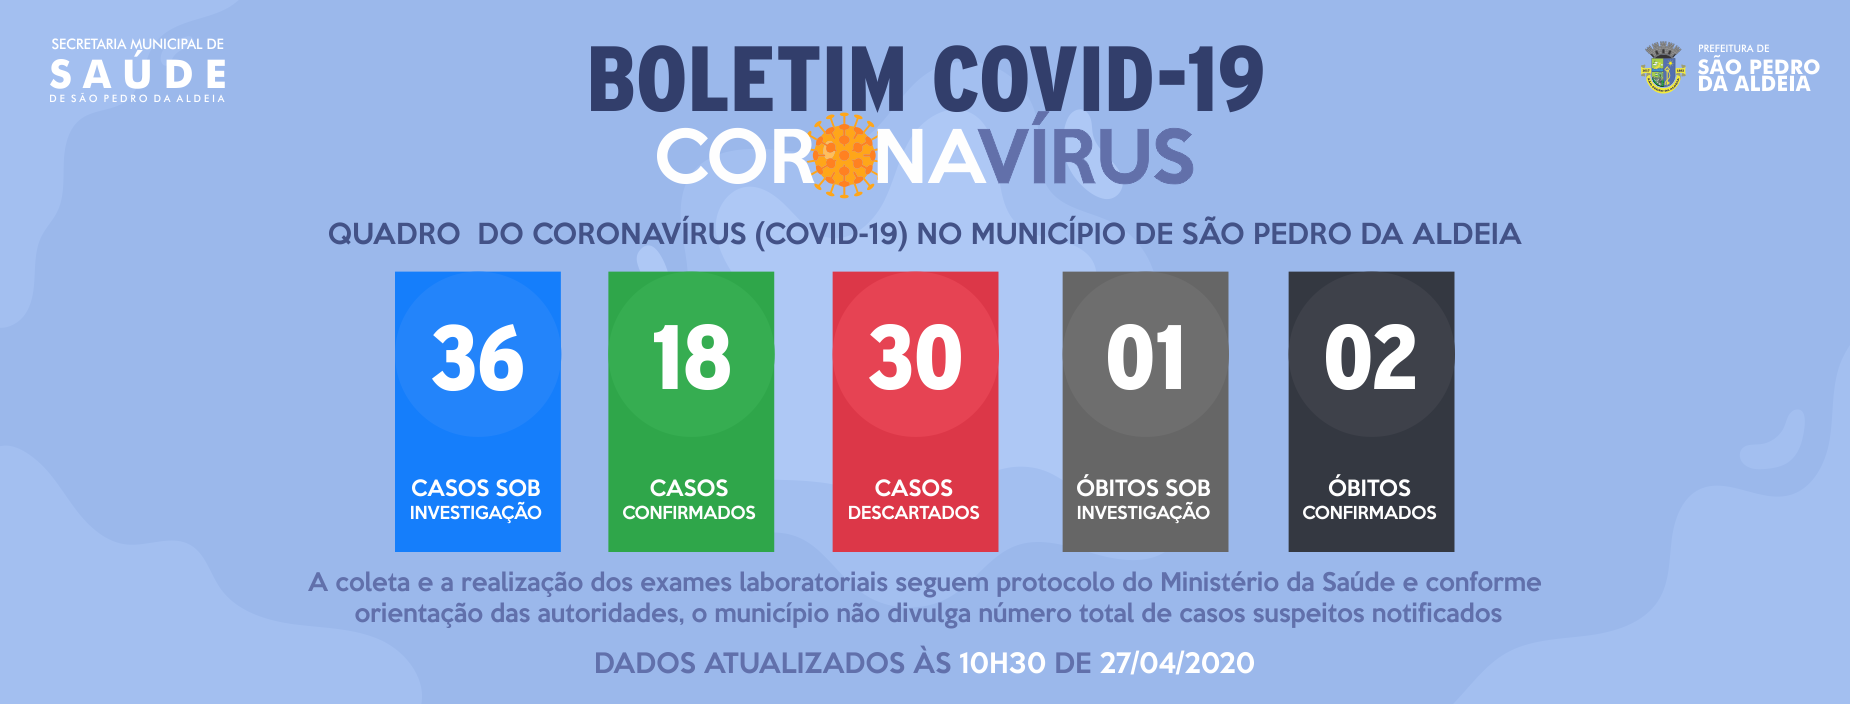 Aumenta para 18 os casos confirmados de Covid-19 em São Pedro da Aldeia